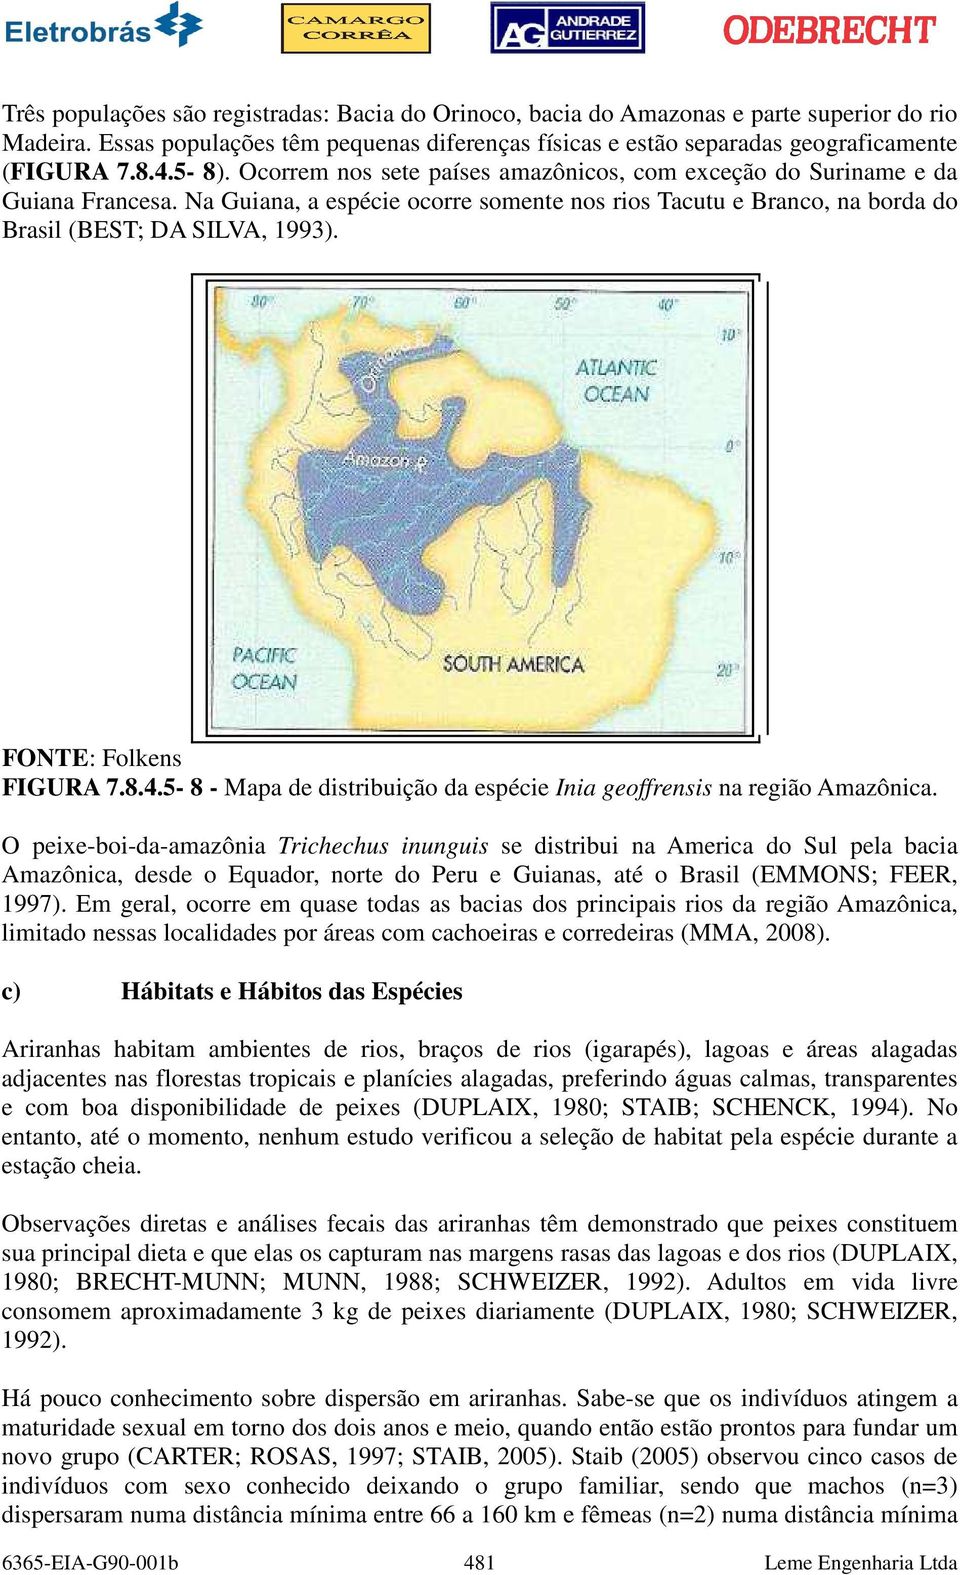 FONTE: Folkens FIGURA 7.8.4.5-8 - Mapa de distribuição da espécie Inia geoffrensis na região Amazônica.